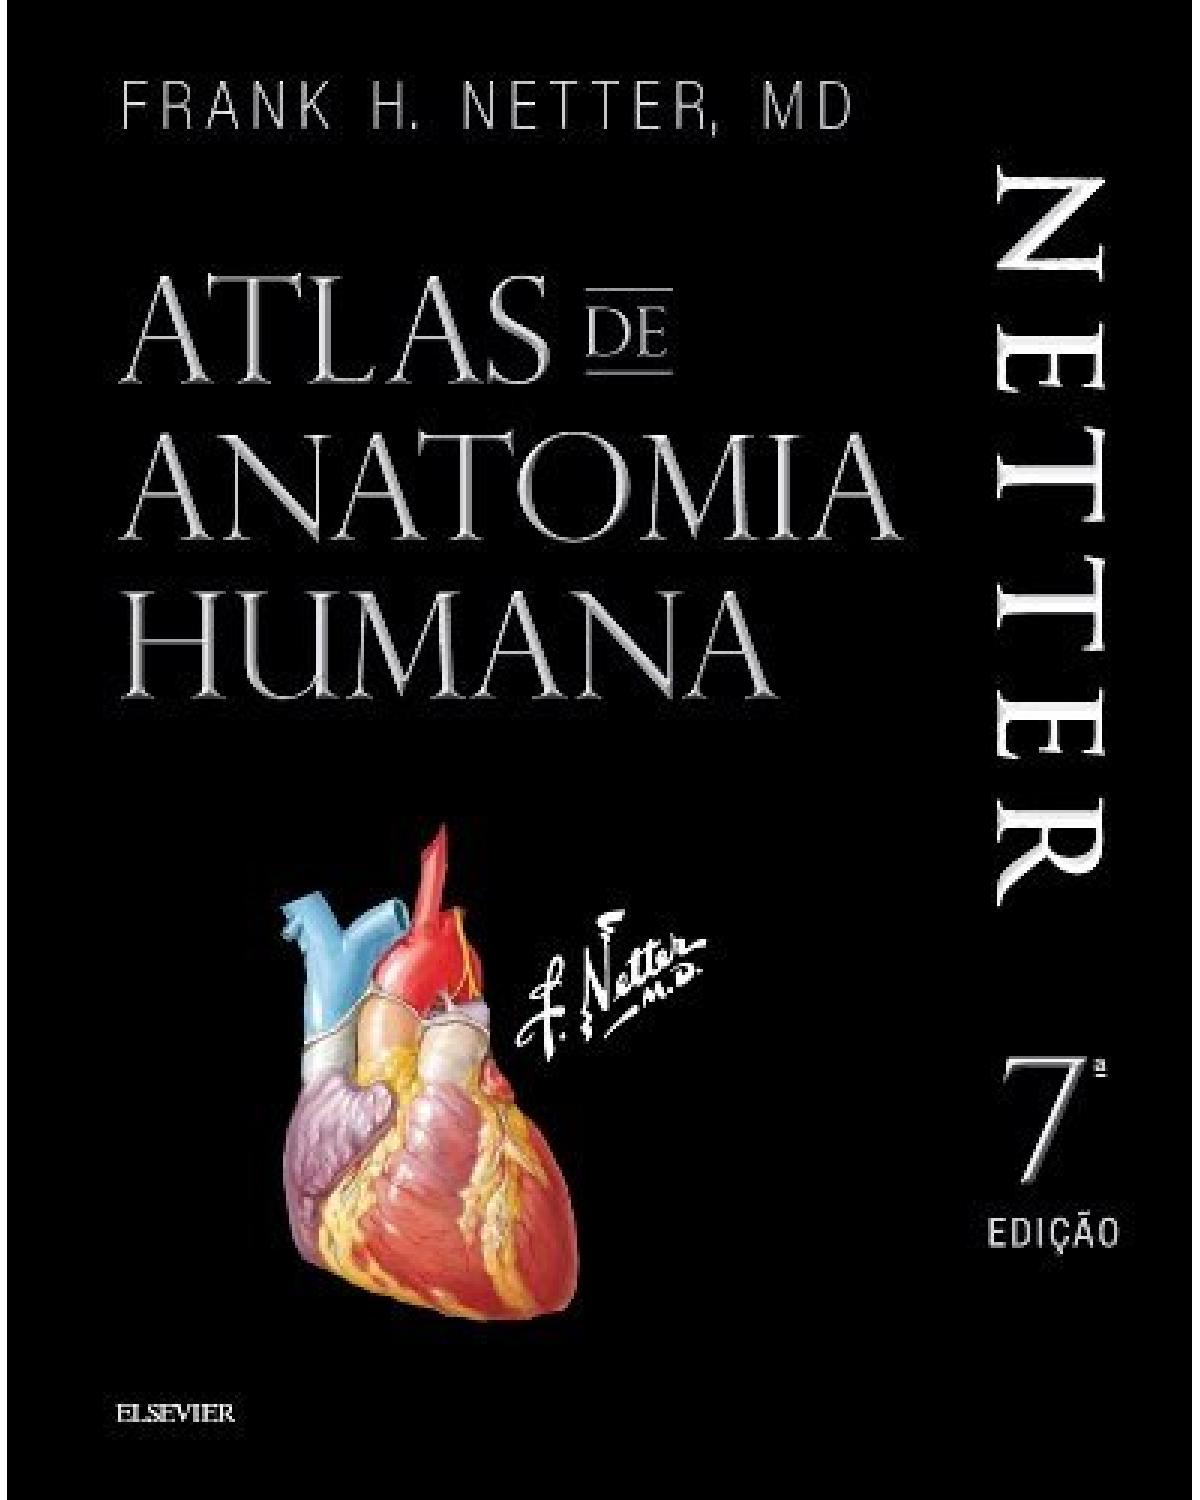 Netter - Atlas de anatomia humana - 7ª Edição | 2019